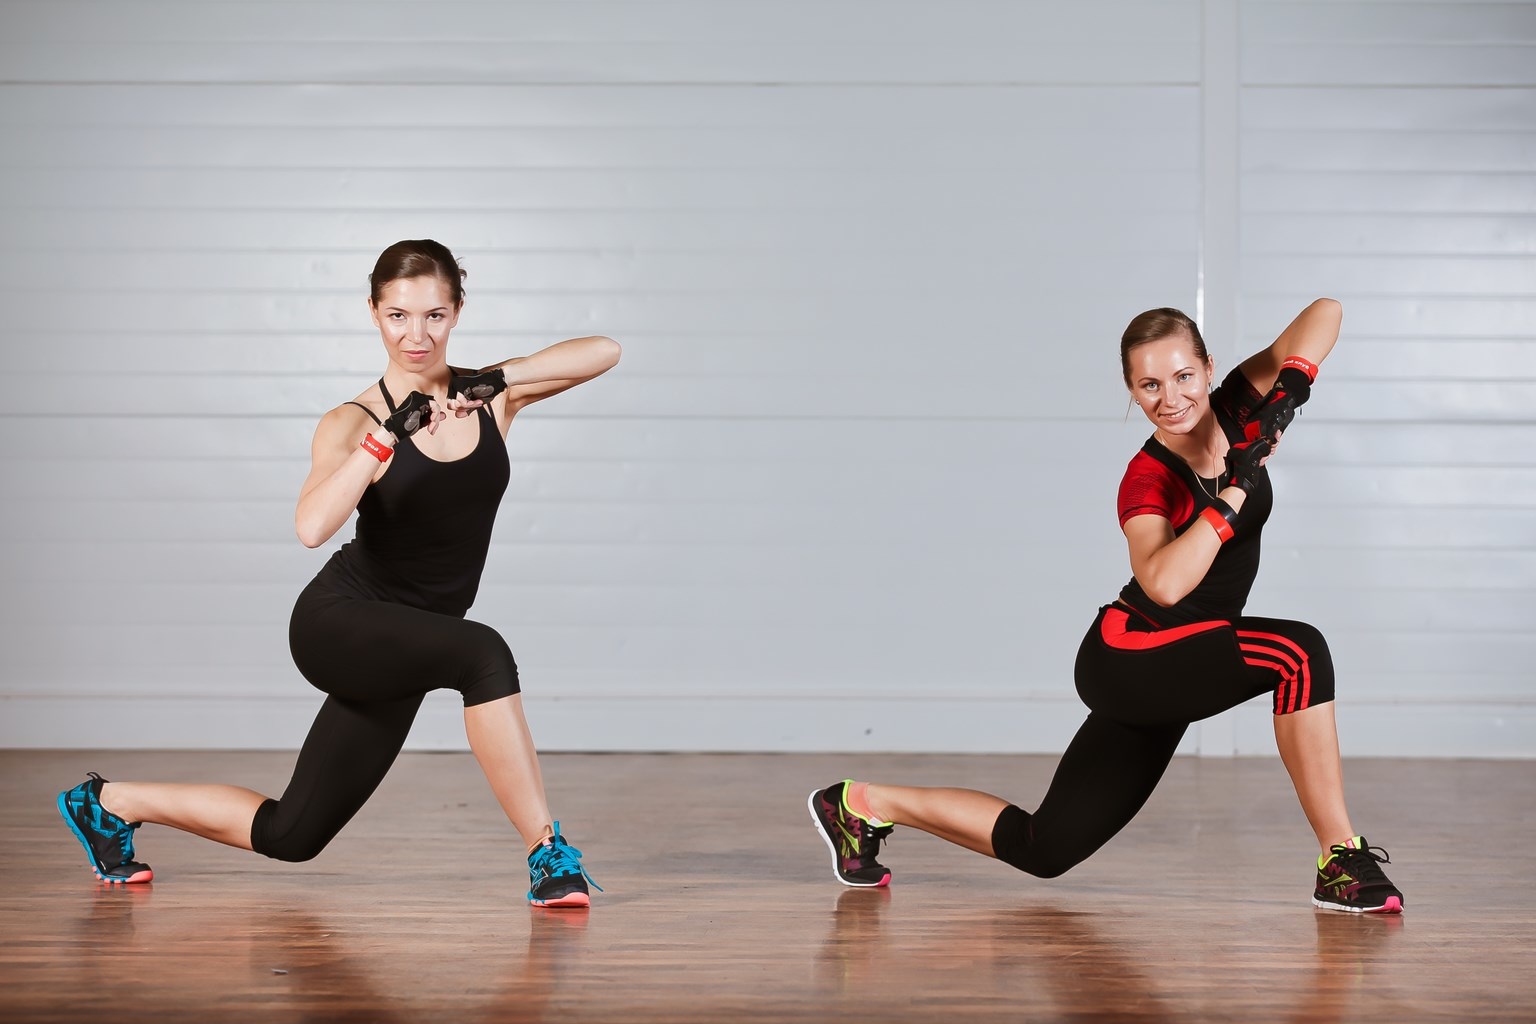 Высокоинтенсивные интервальные тренировки (hiit): самые лучшие упражнения чтобы похудеть - promusculus.ru
высокоинтенсивные интервальные тренировки (hiit): самые лучшие упражнения чтобы похудеть - promusculus.ru